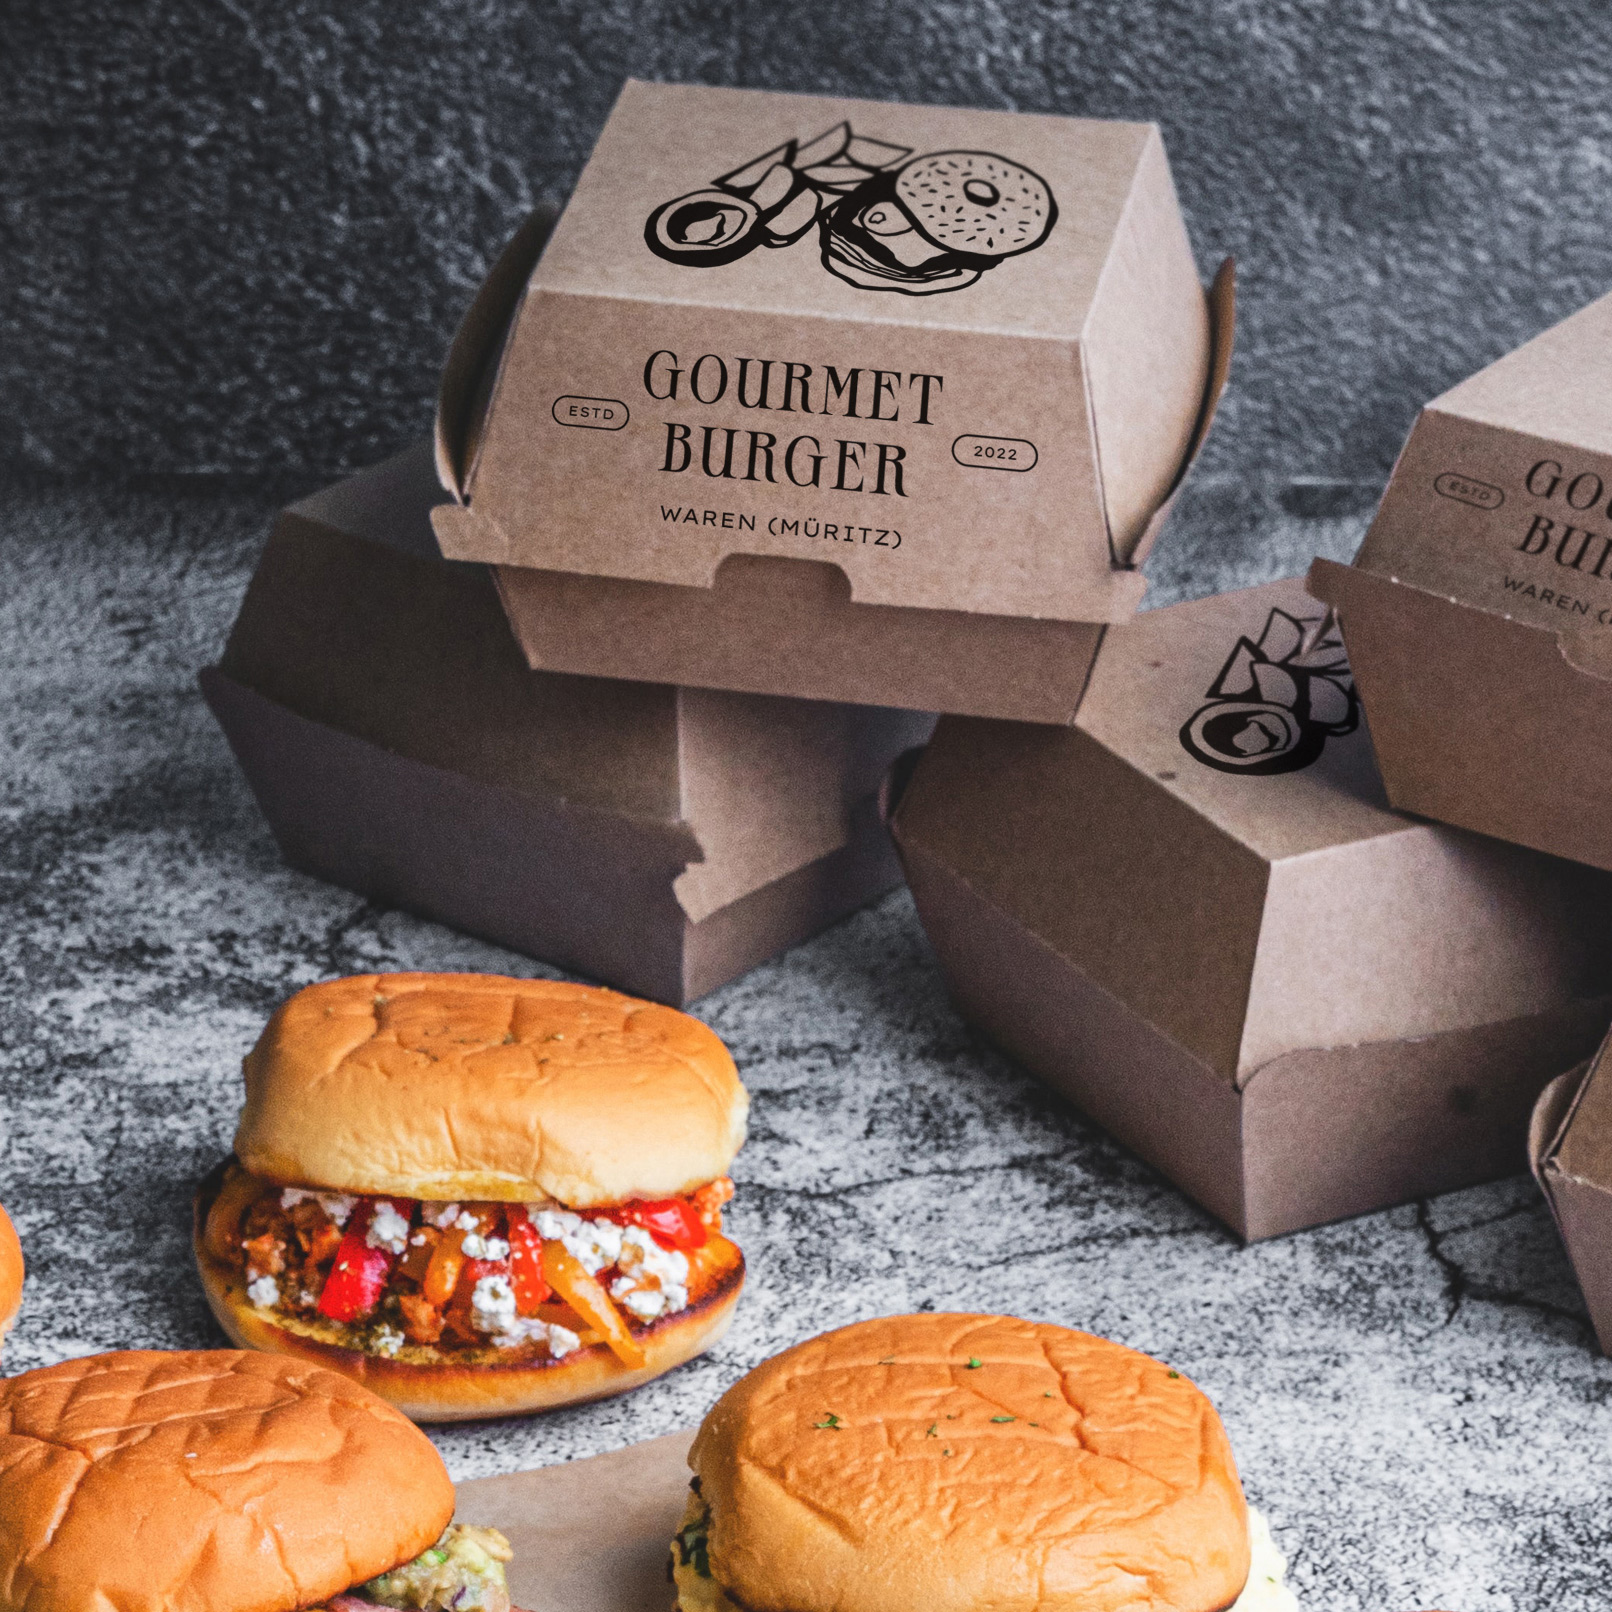 Bild von Fast Food auf einer Verpackung für Hamburger